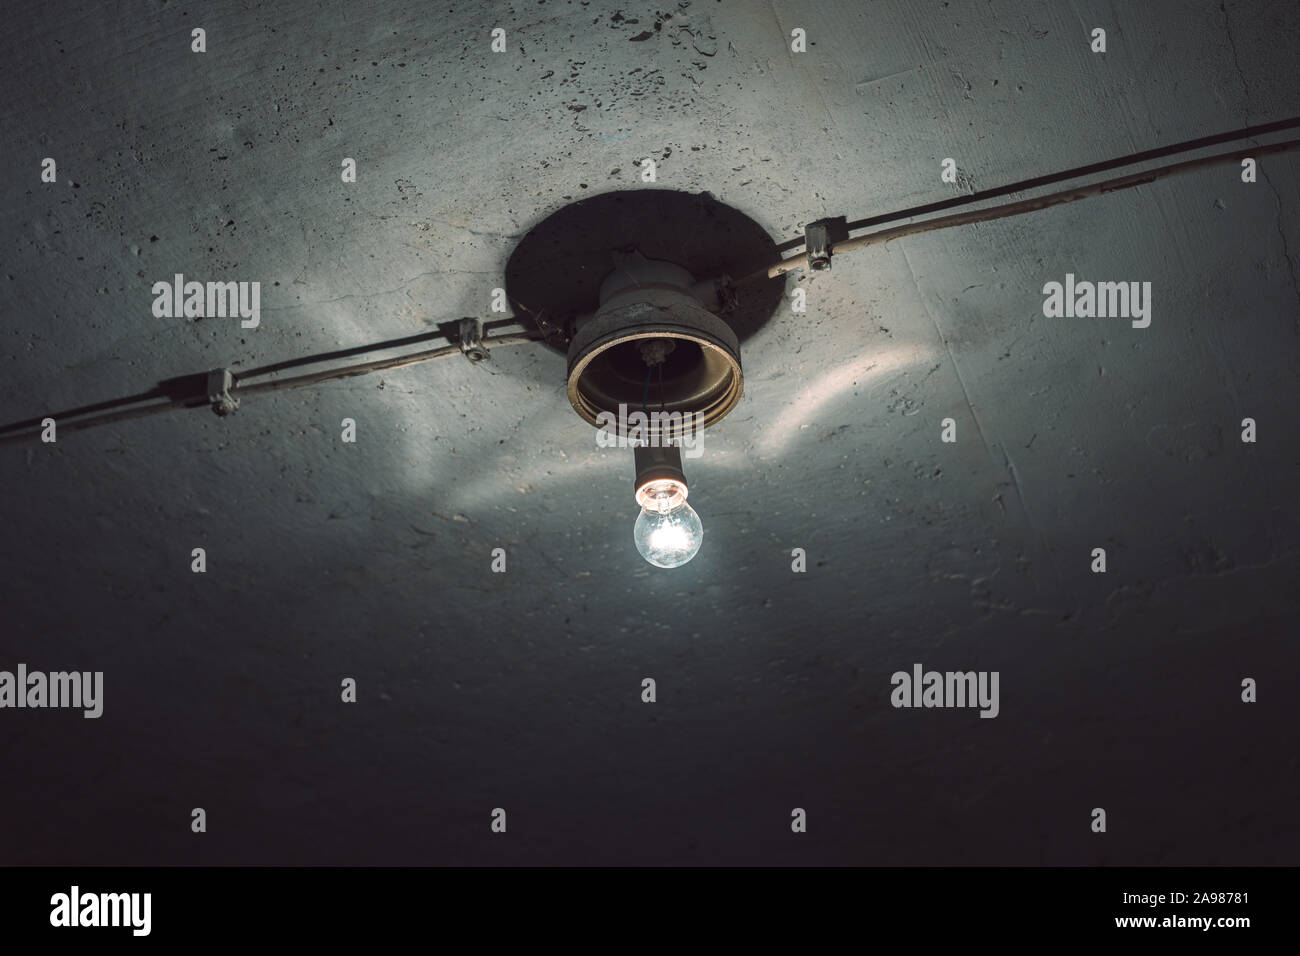 Sous-sol sur l'ampoule au plafond en béton, low angle view Banque D'Images